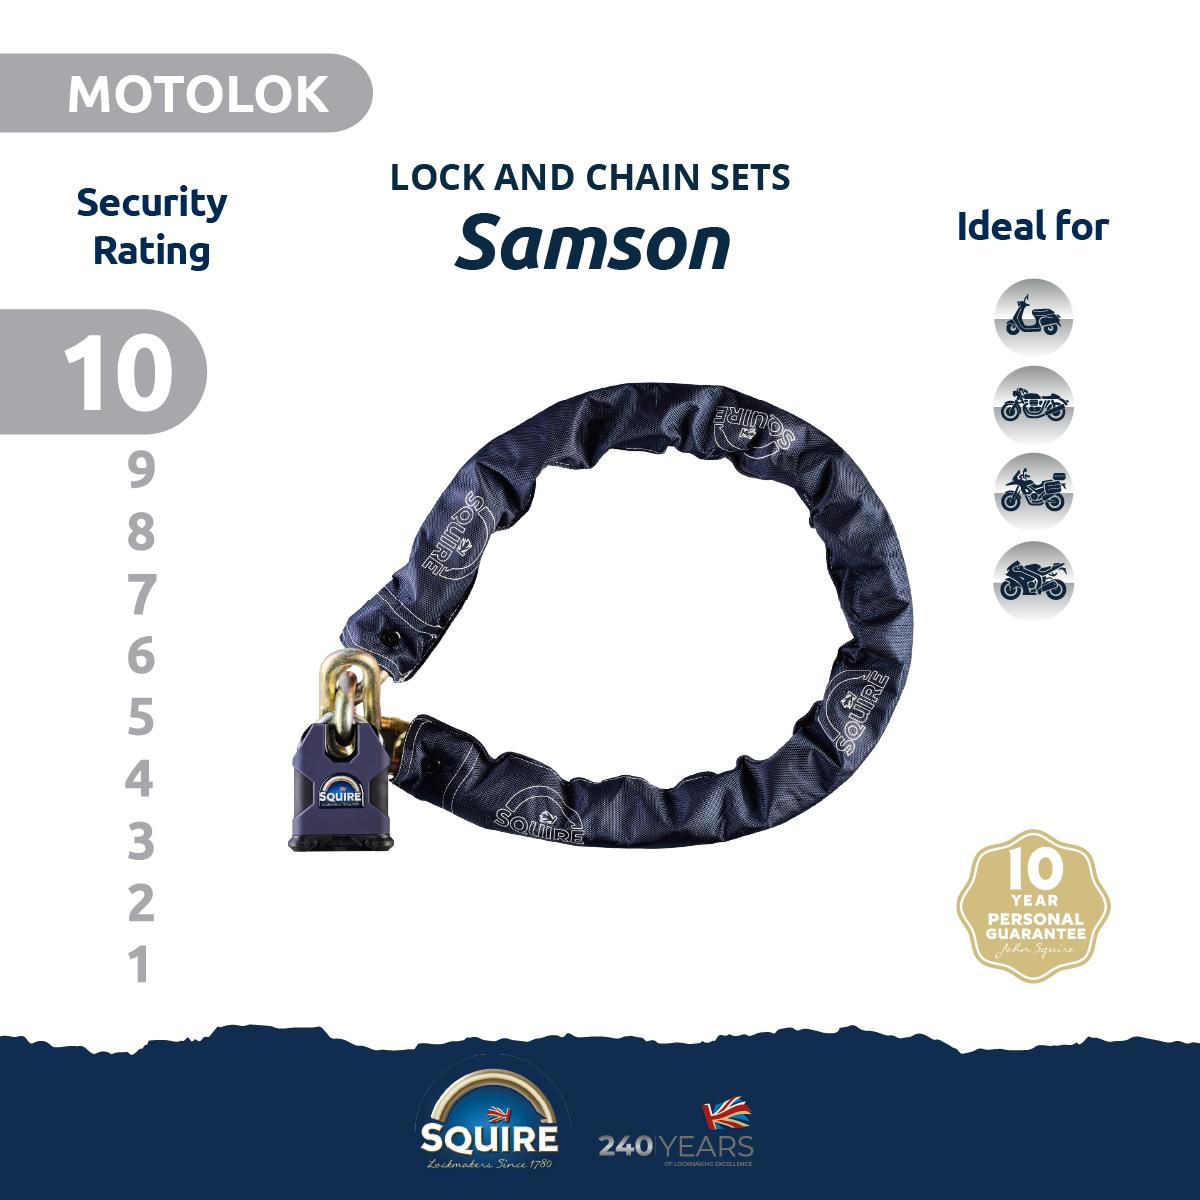 Samson Padlock and Chain Sets